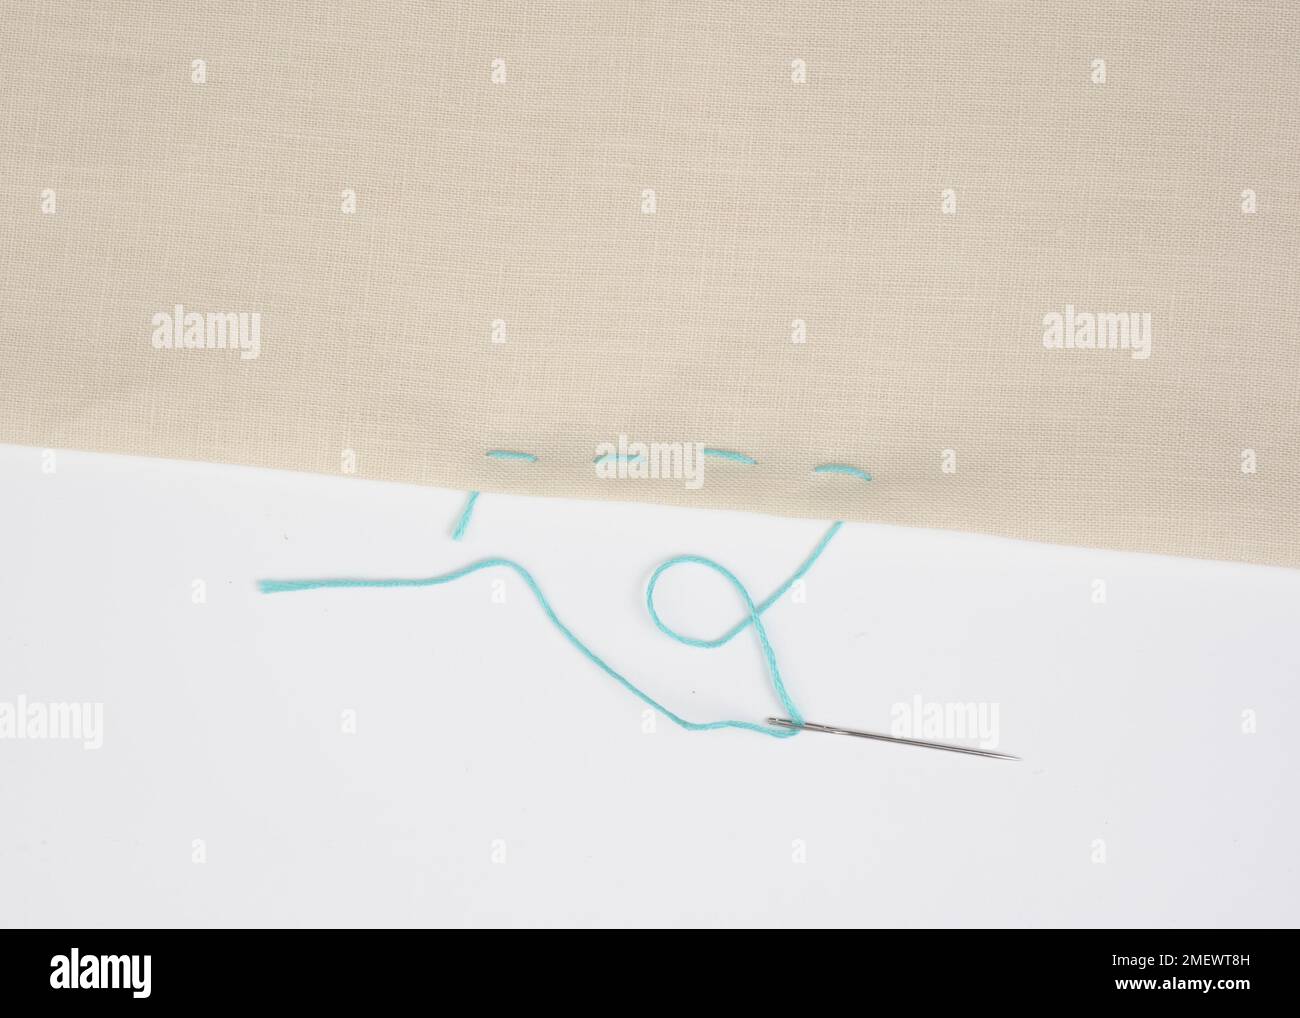 Sewing running stitch Stock Photo - Alamy